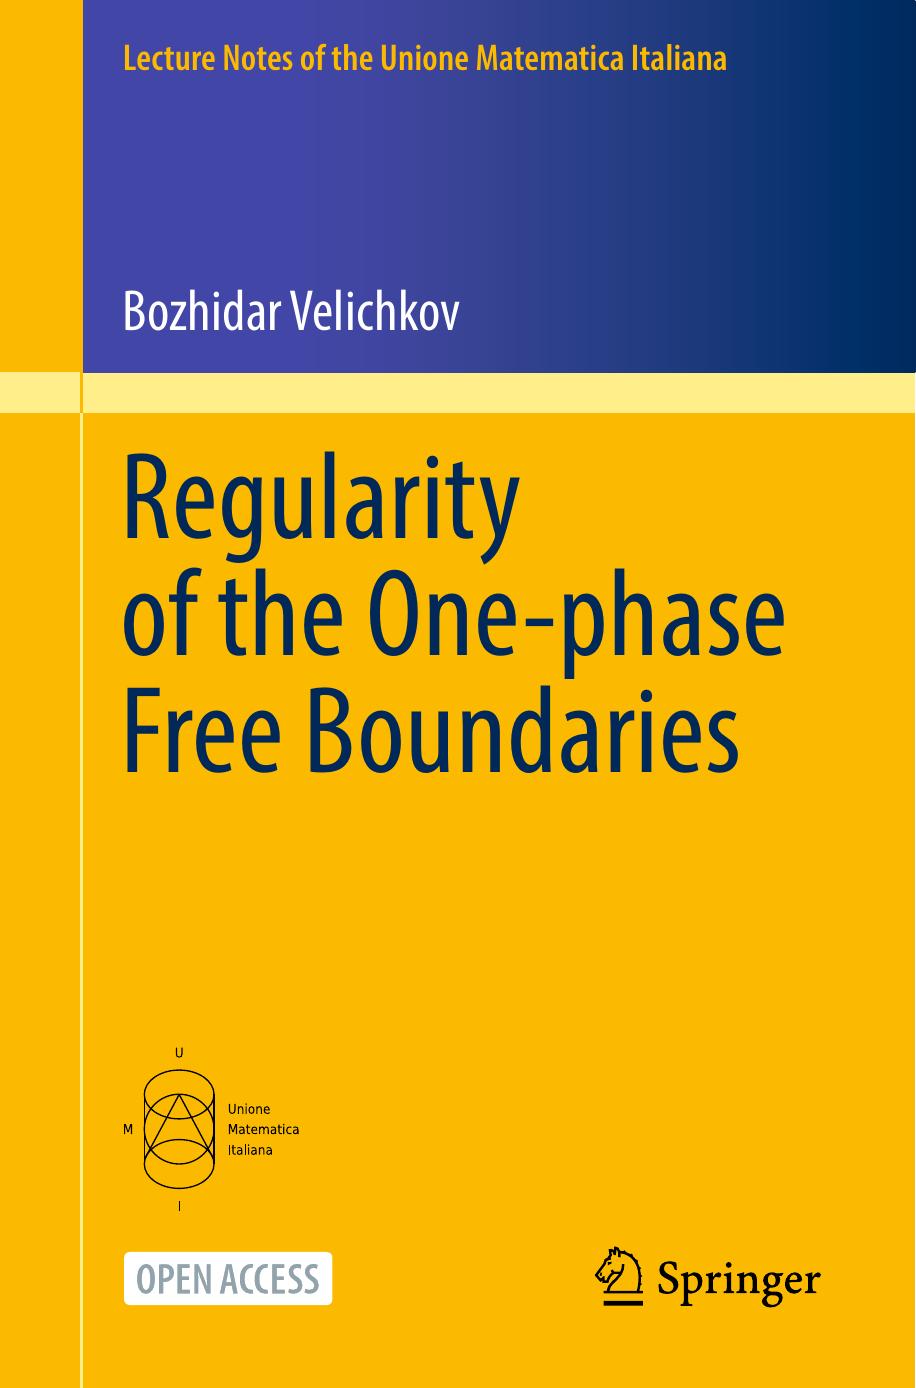 Regularity of the One-phase Free Boundaries by Bozhidar Velichkov